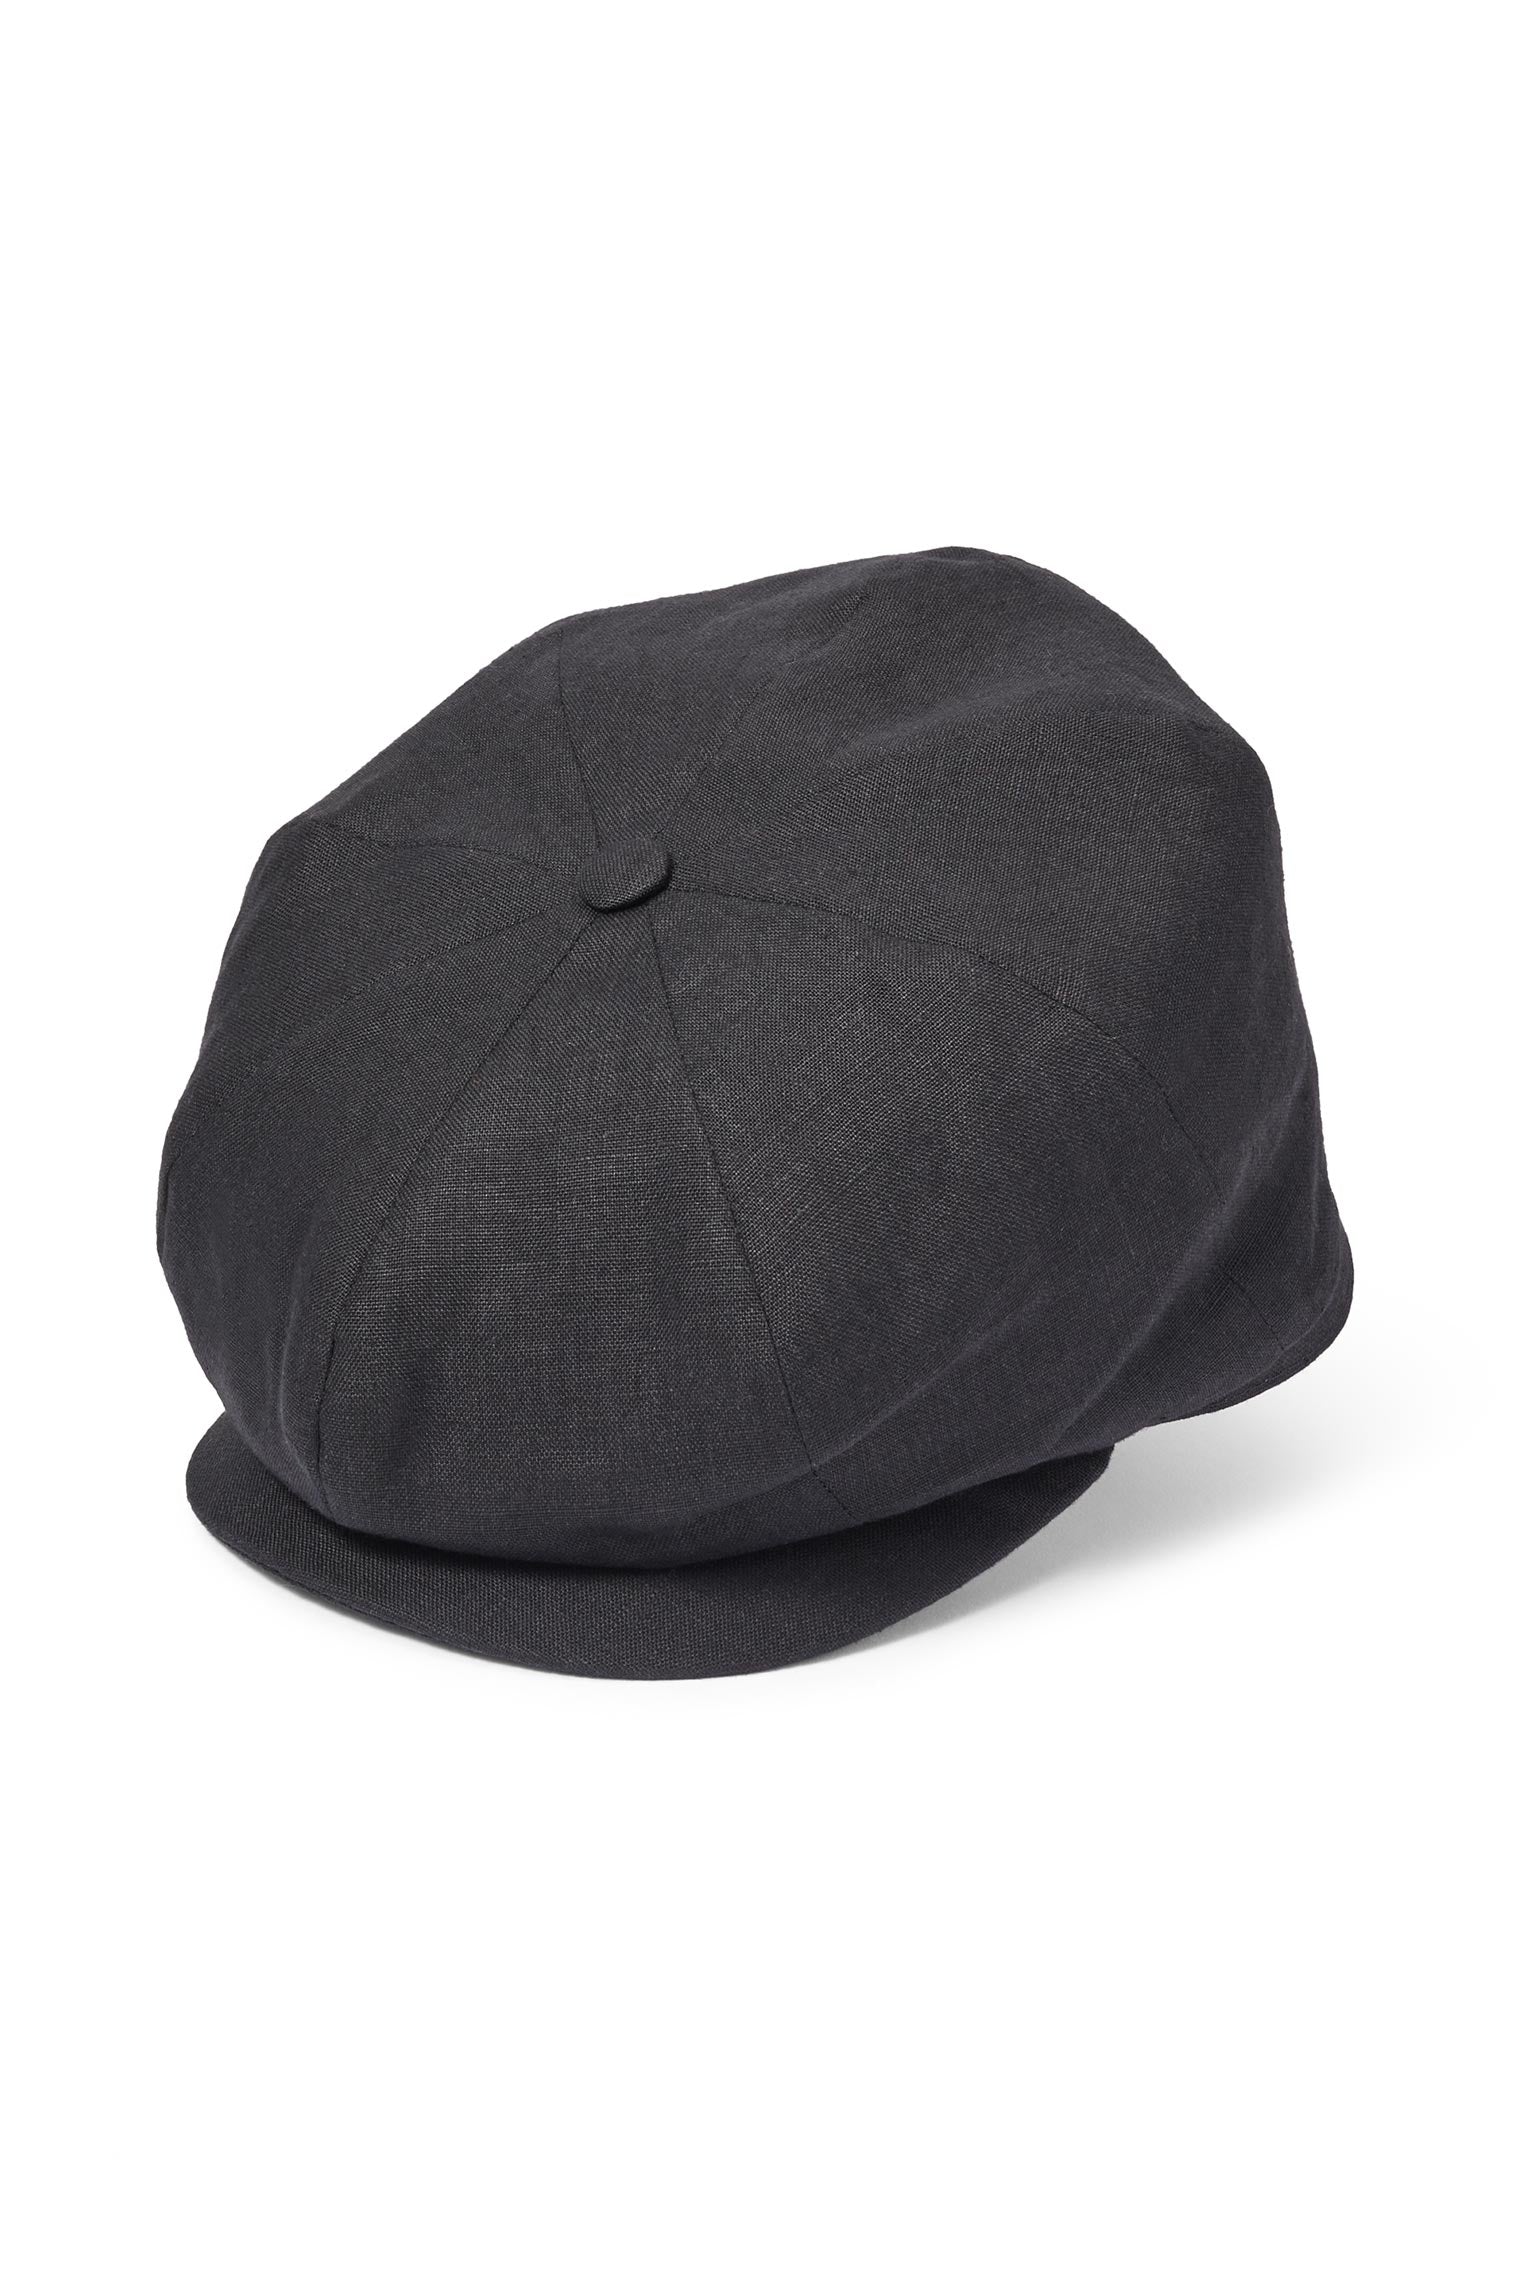 Tremelo Black Linen Bakerboy Cap -  - Lock & Co. Hatters London UK